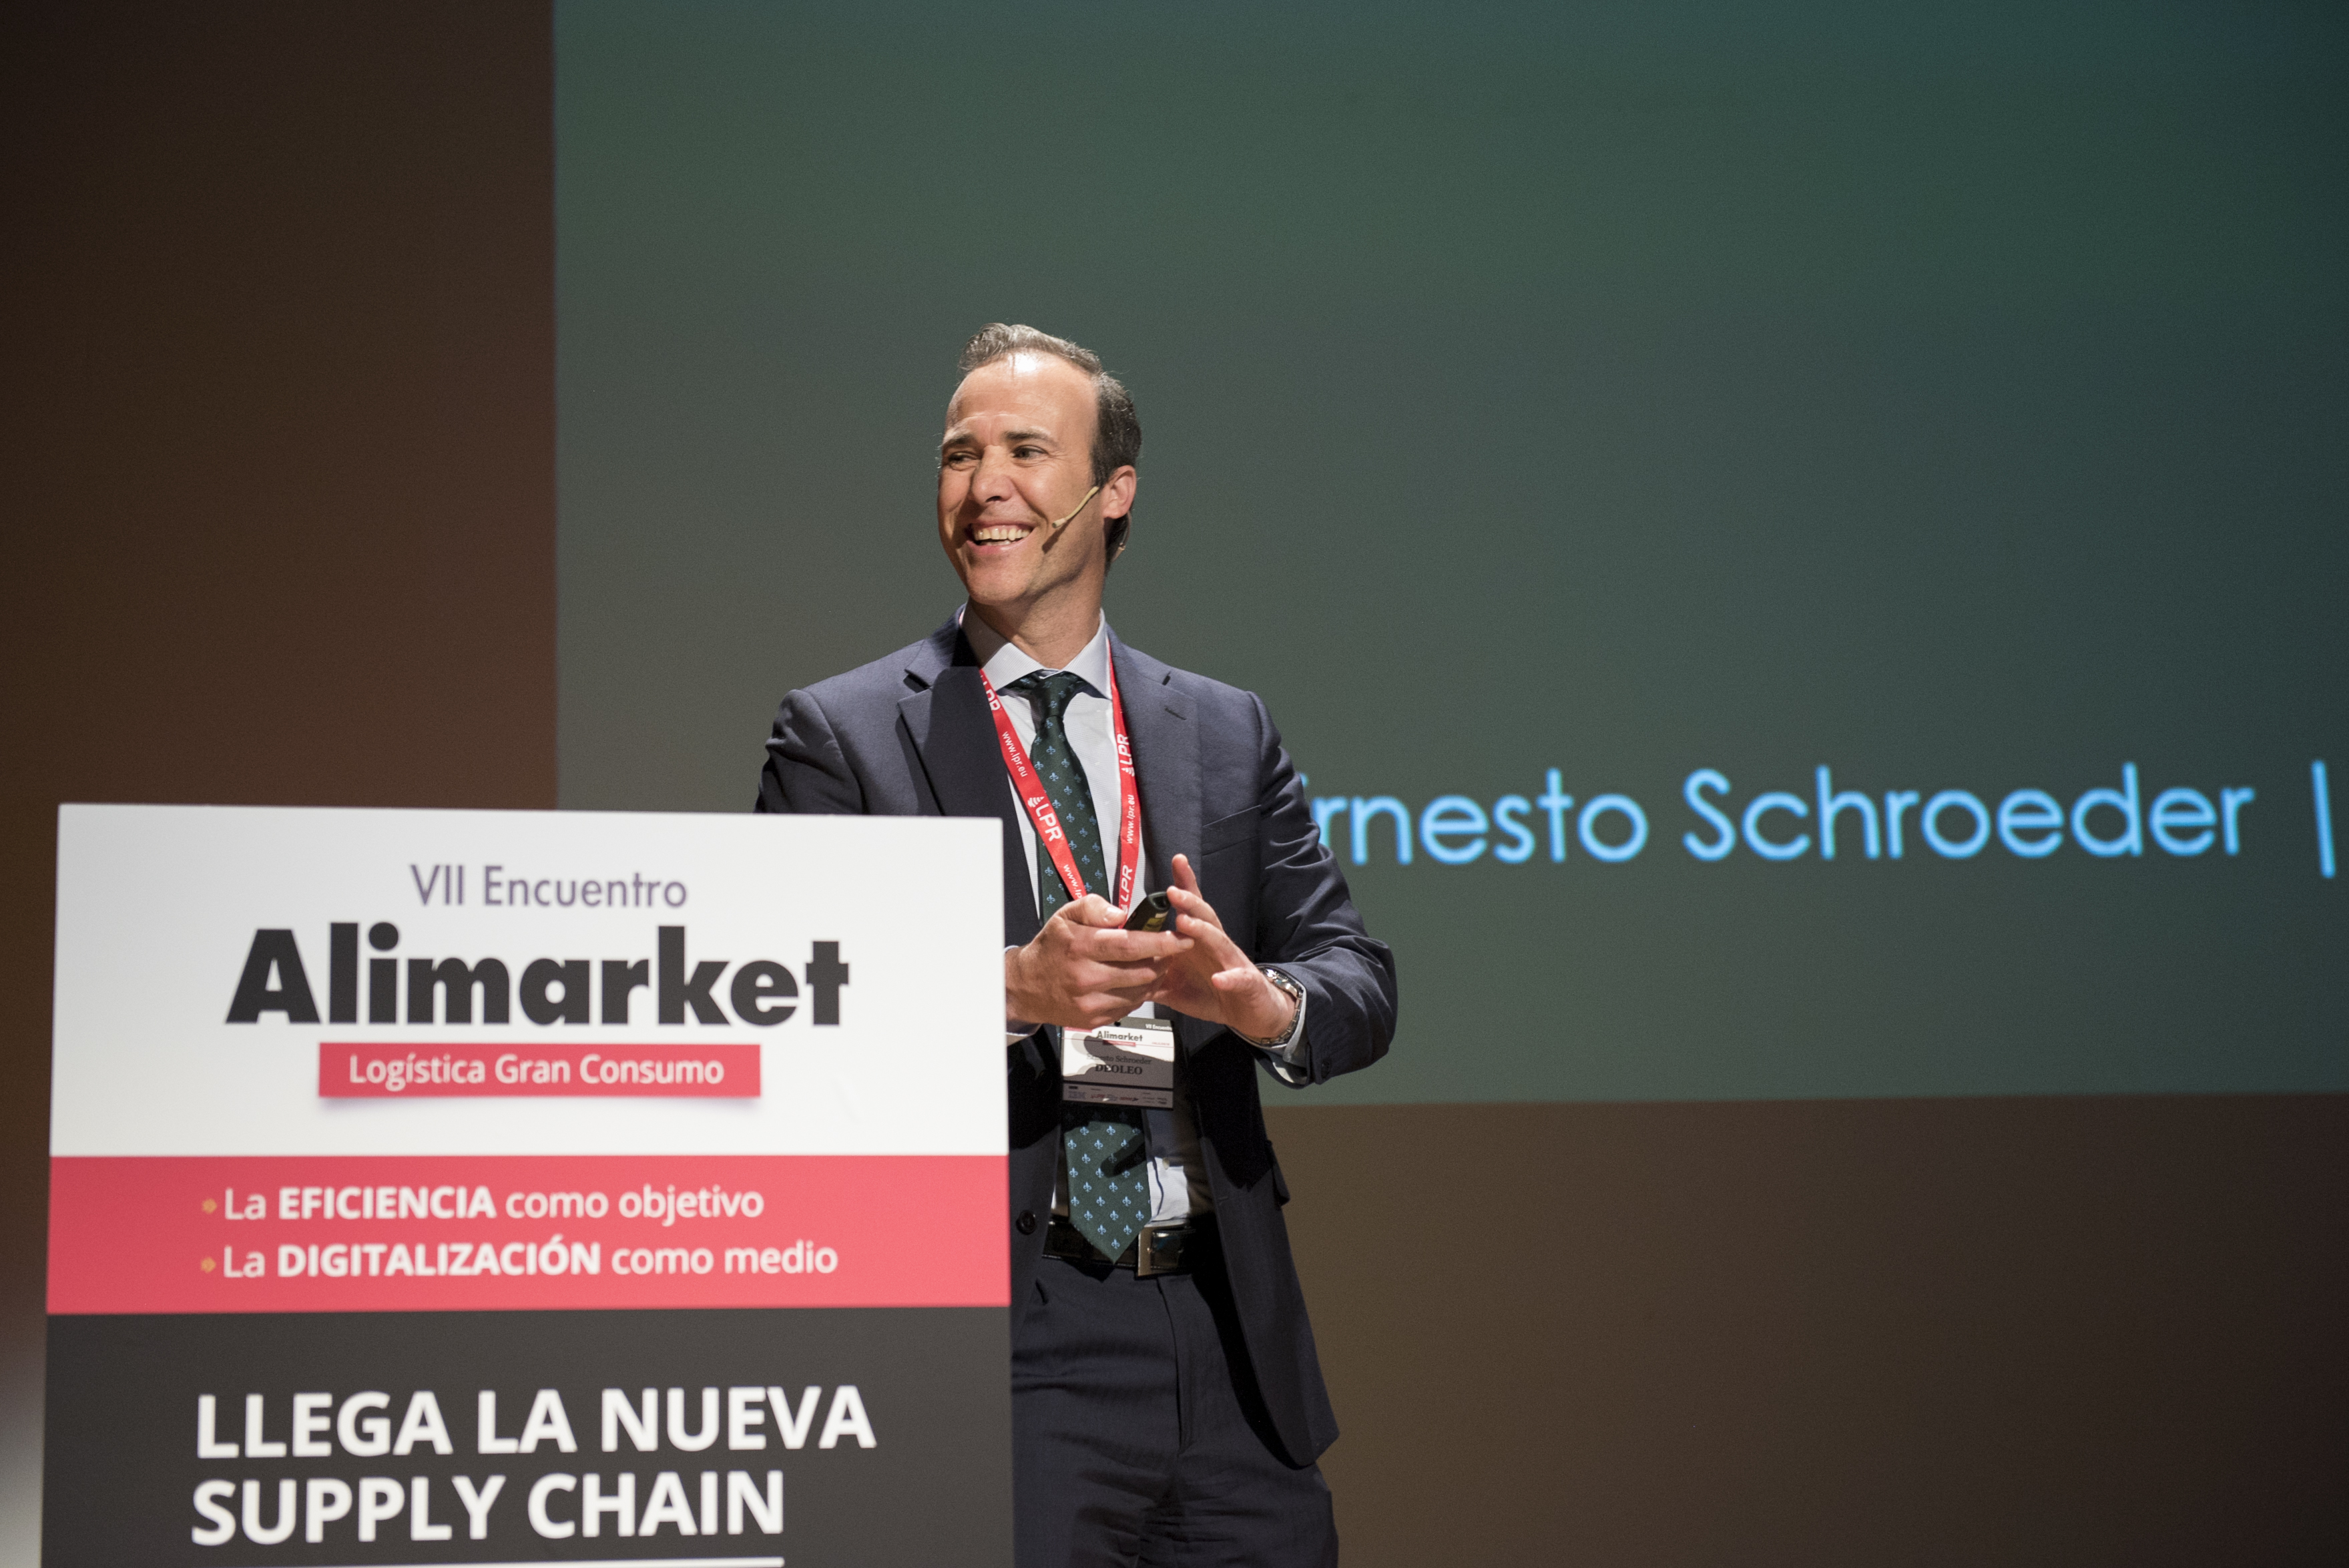 VII Encuentro Alimarket Logística Gran Consumo: Llega la nueva supply chain